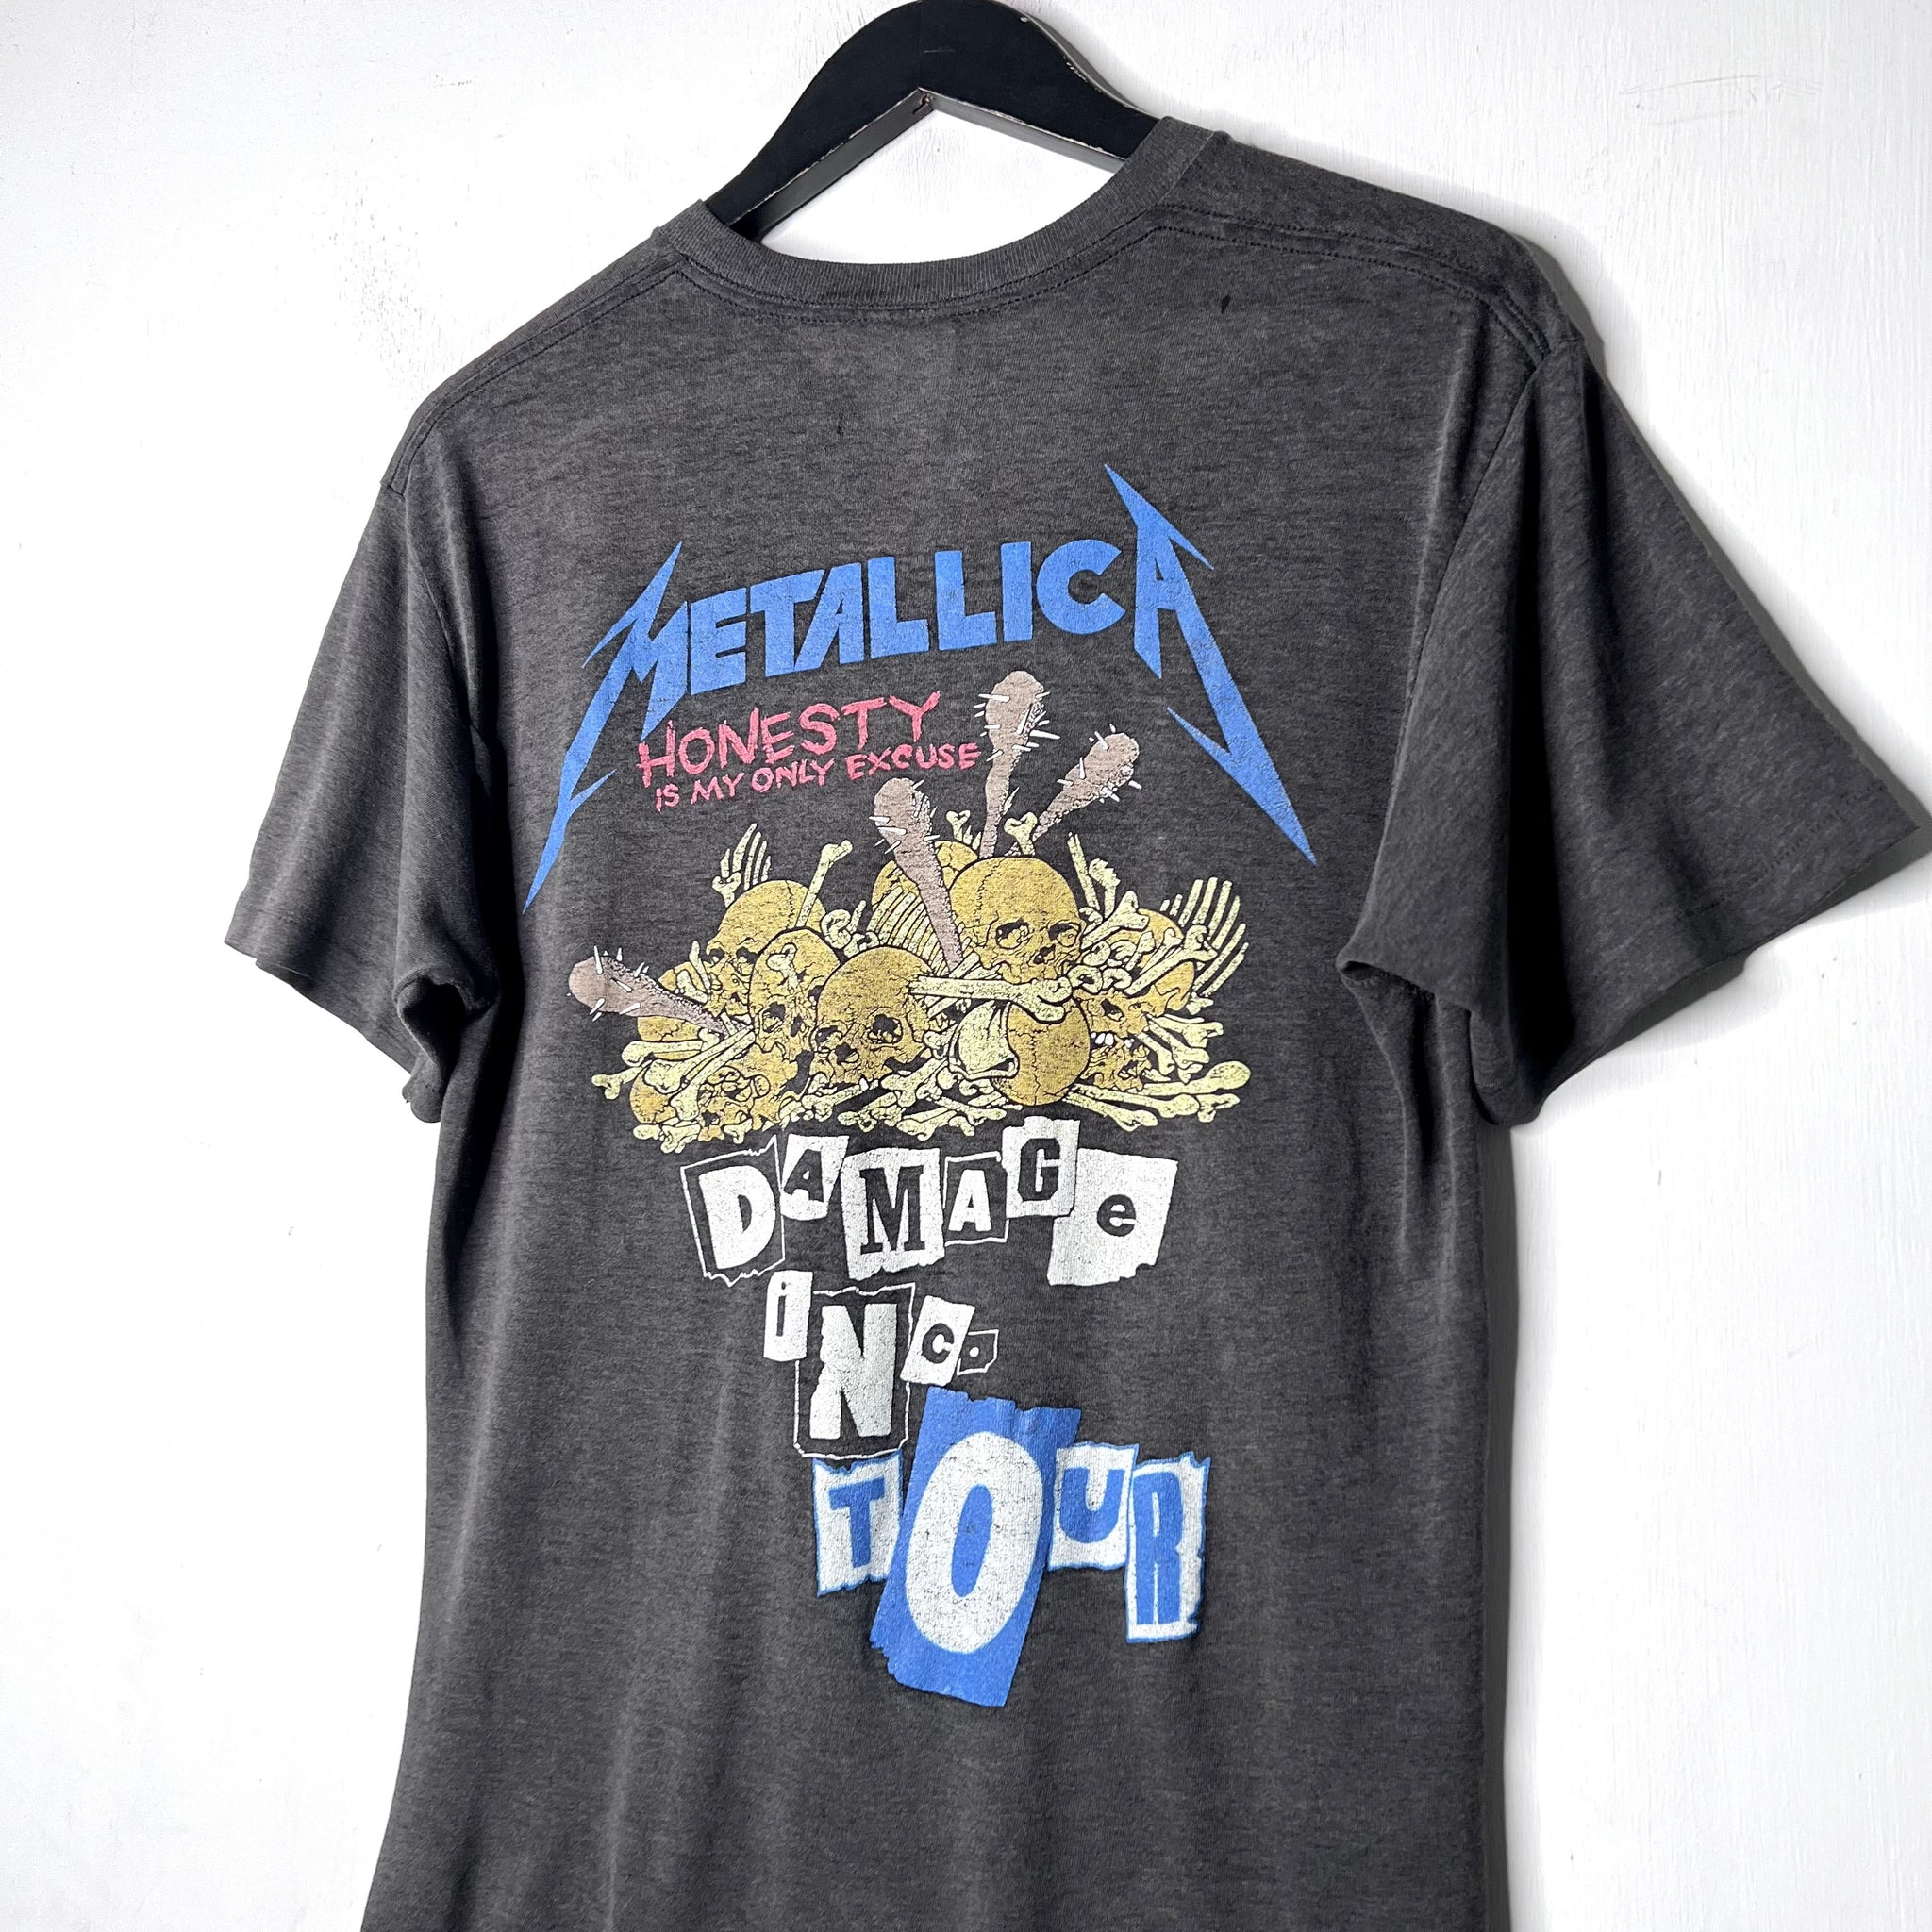 Metallica 'Damage Inc. Tour' - 1987